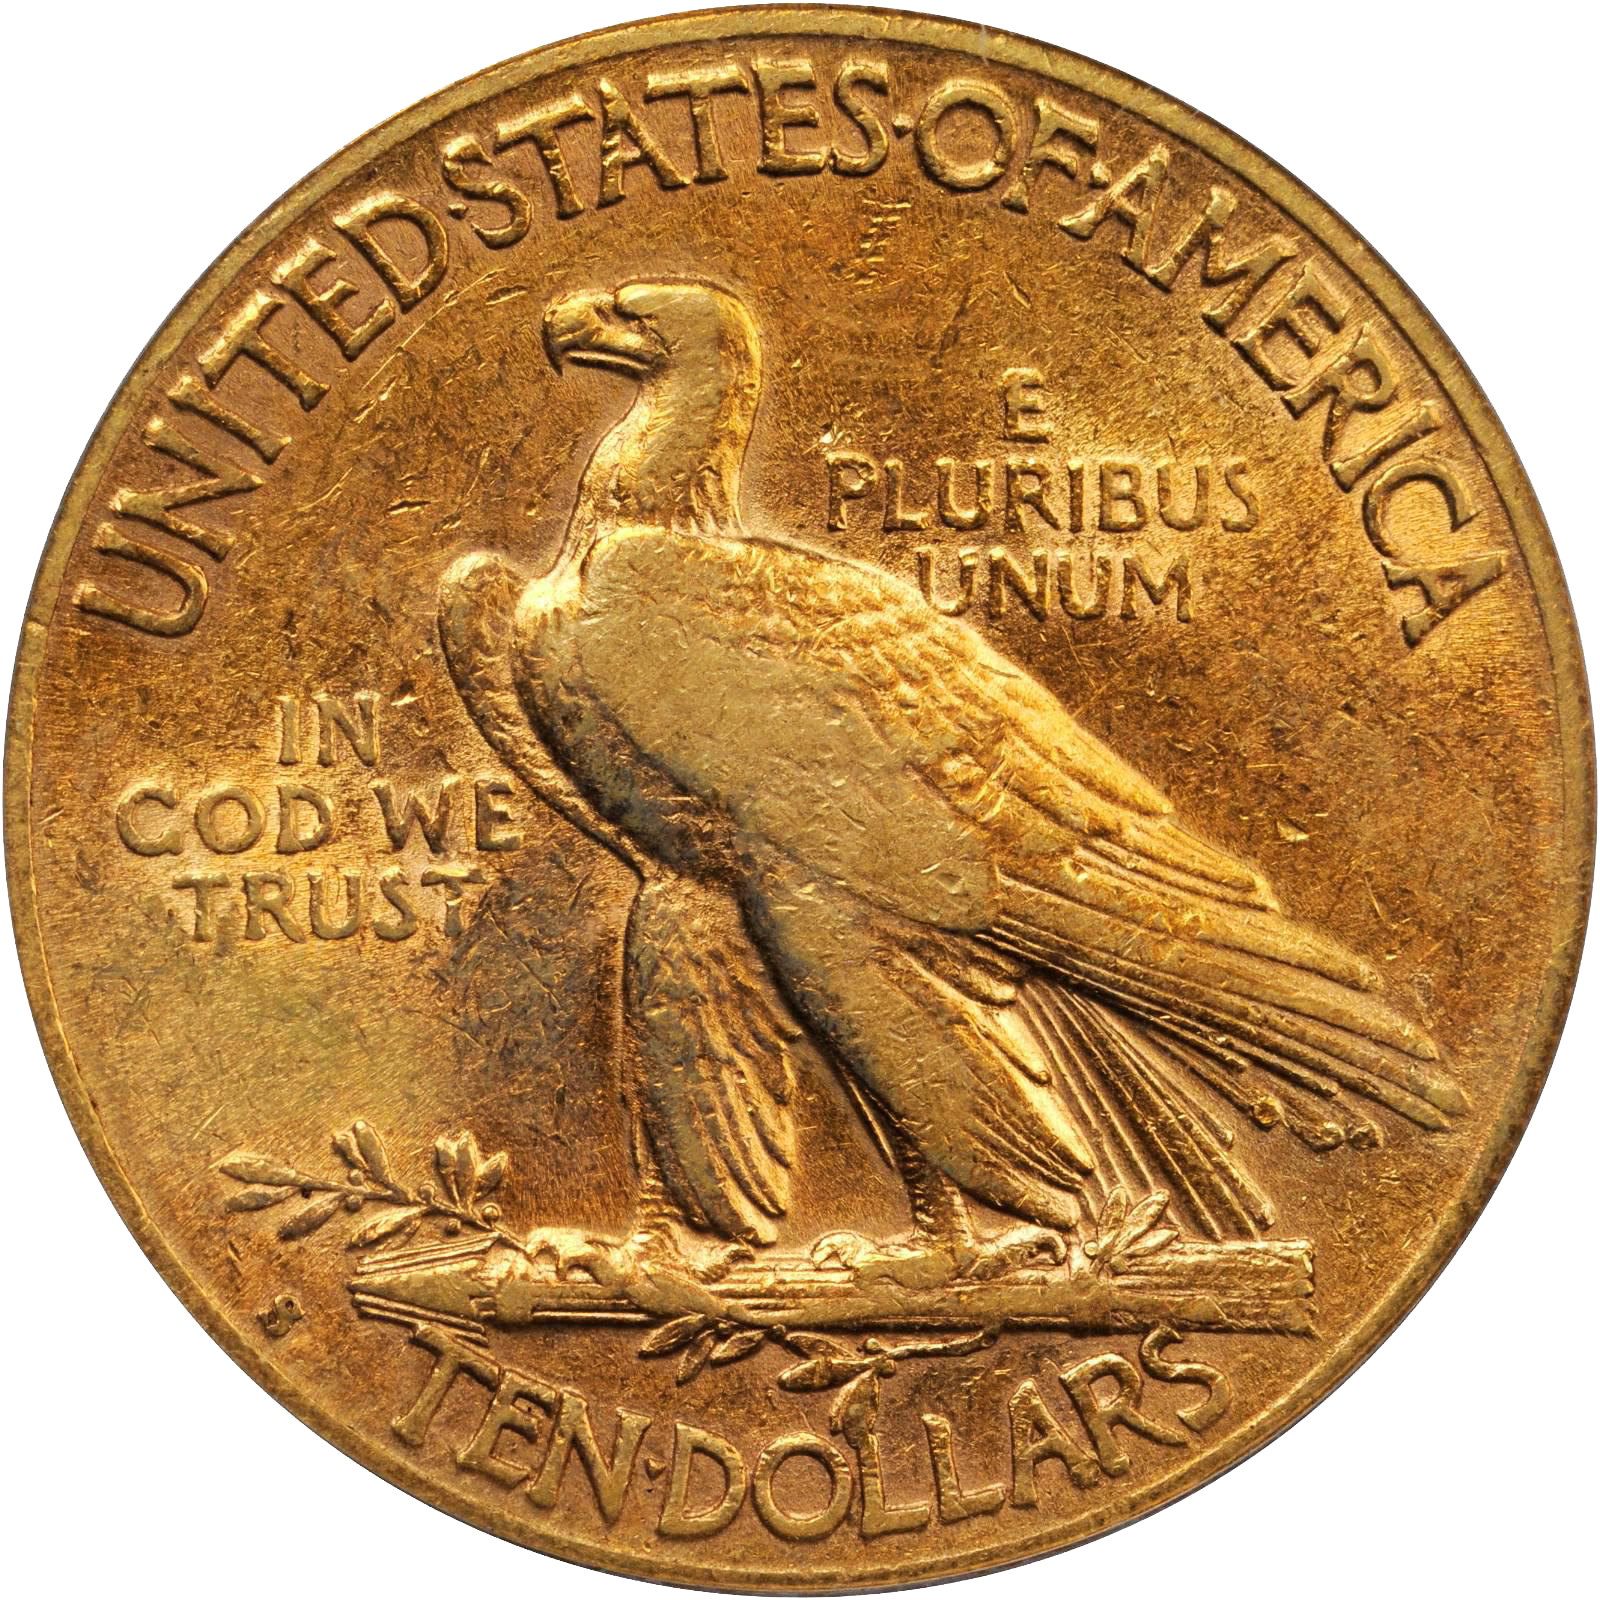 silver eagle coins